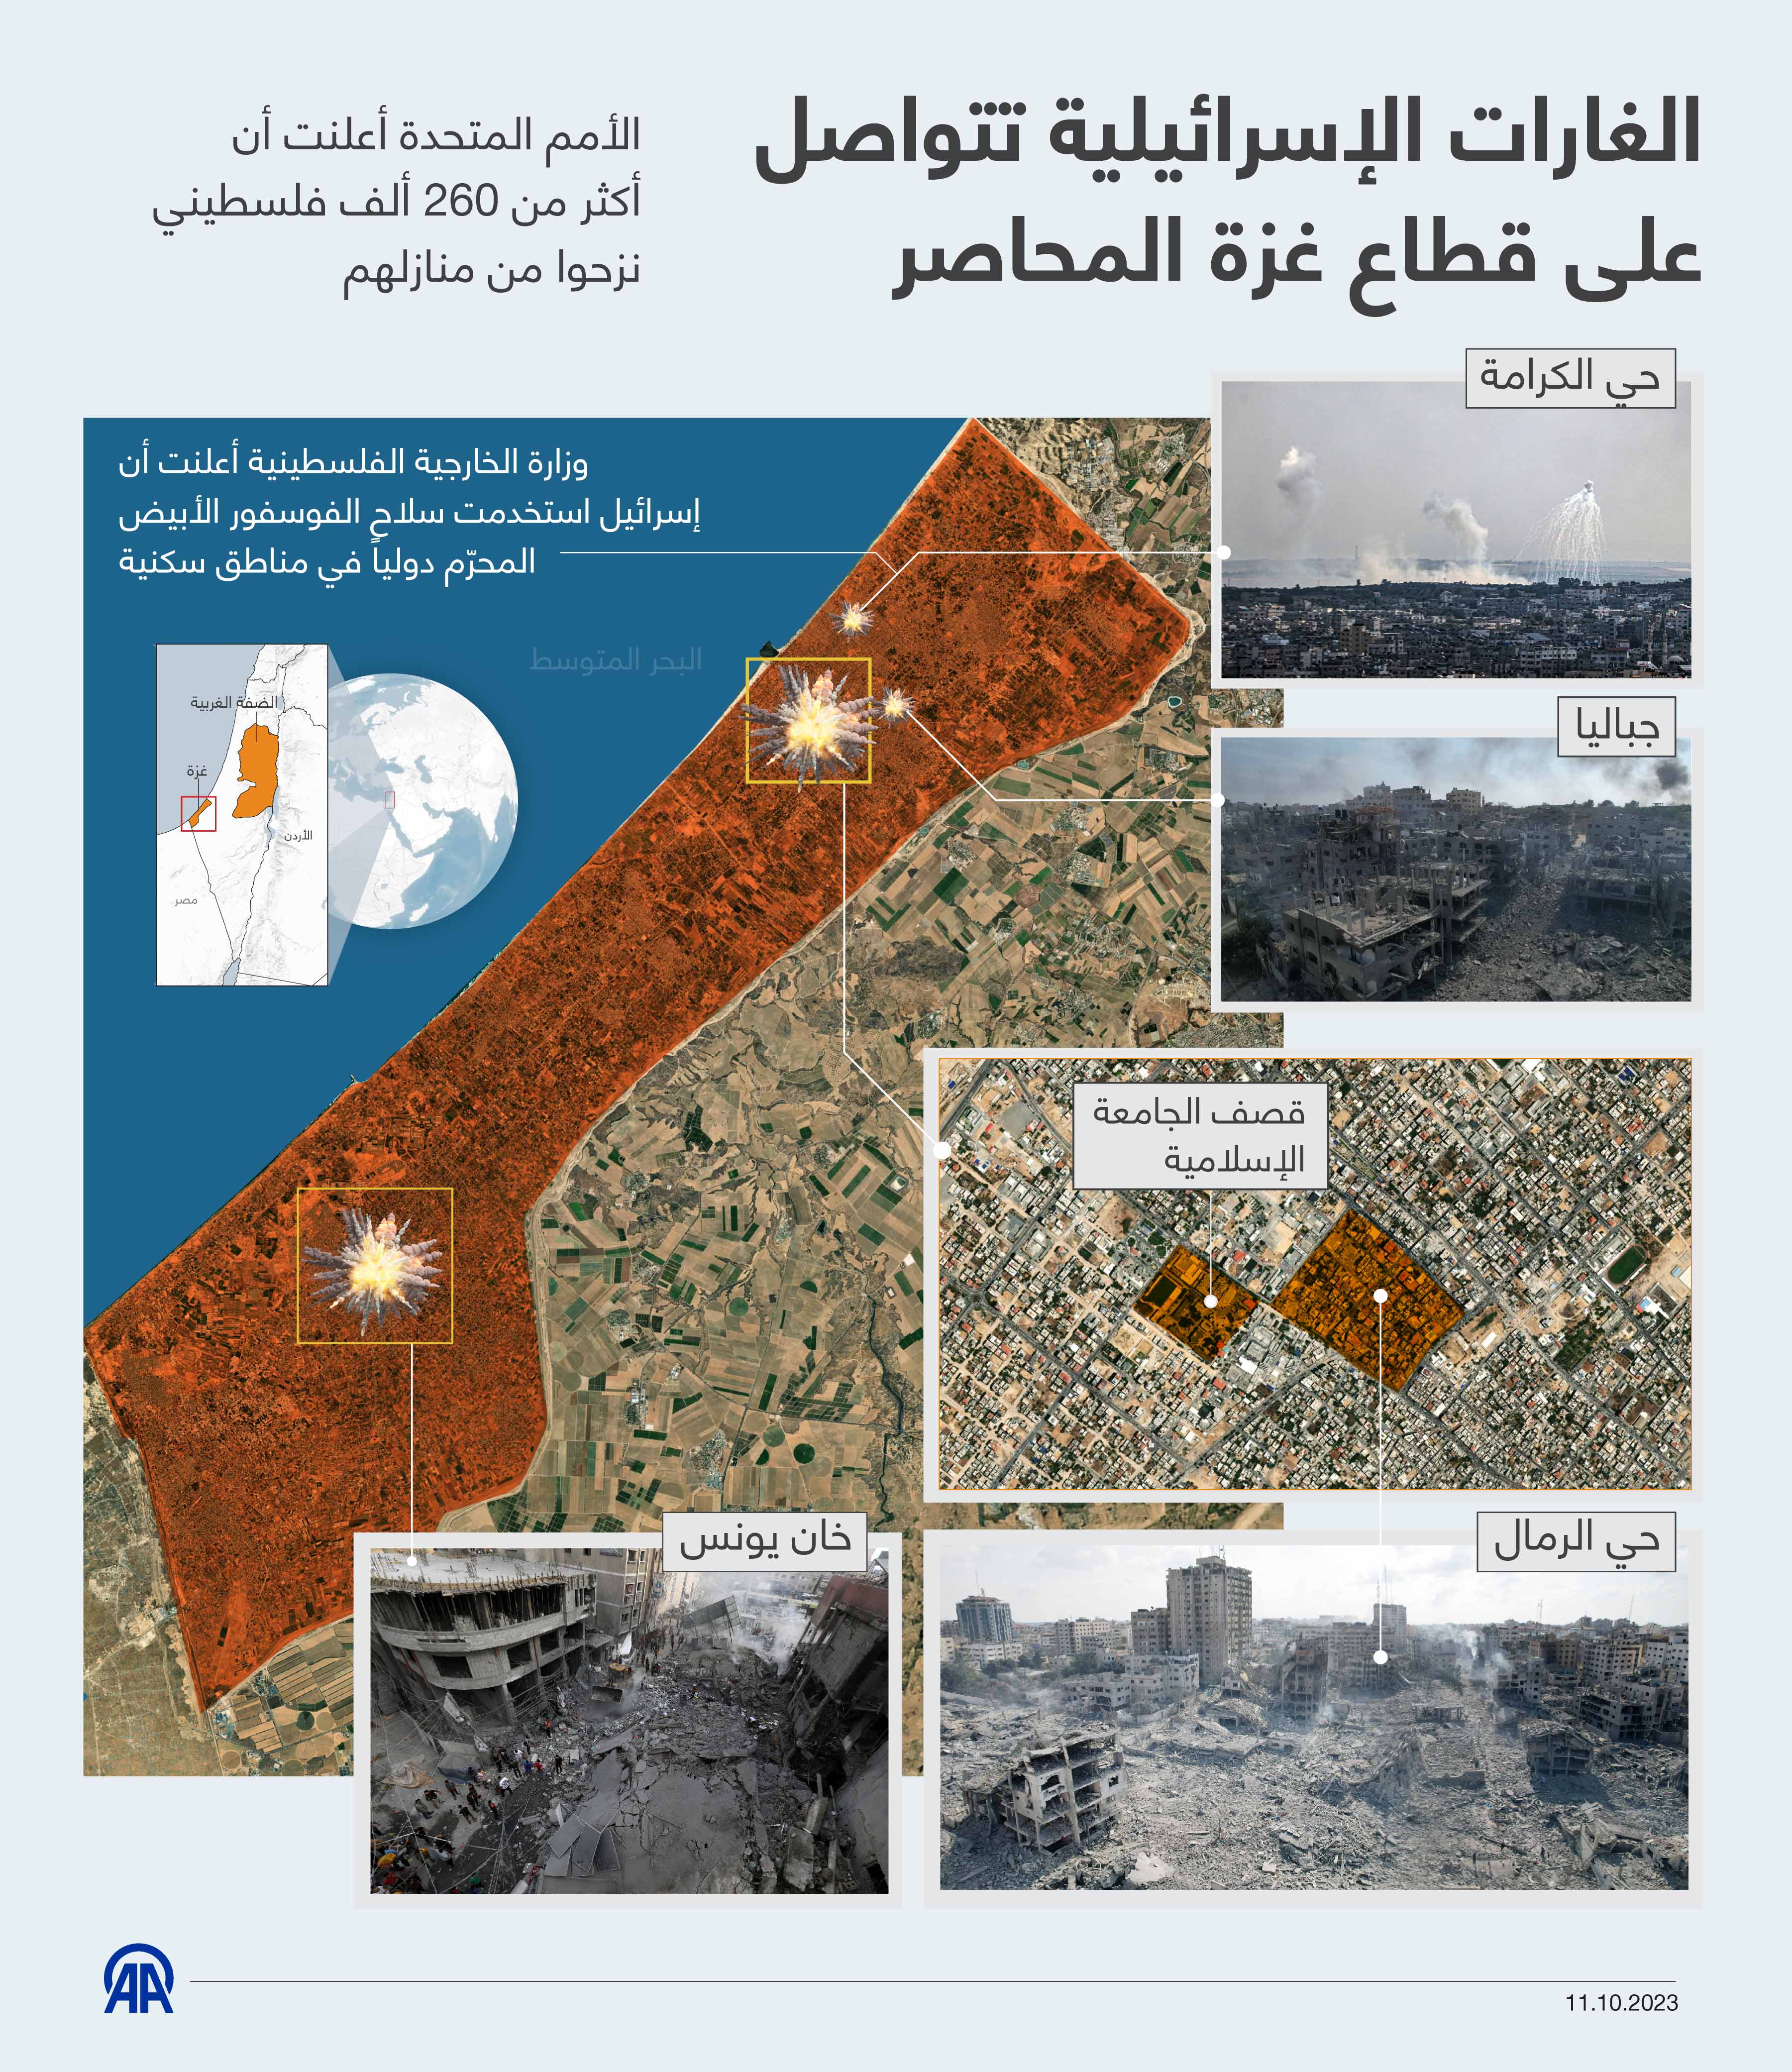 الغارات الإسرائيلية تتواصل على قطاع غزة المحاصر